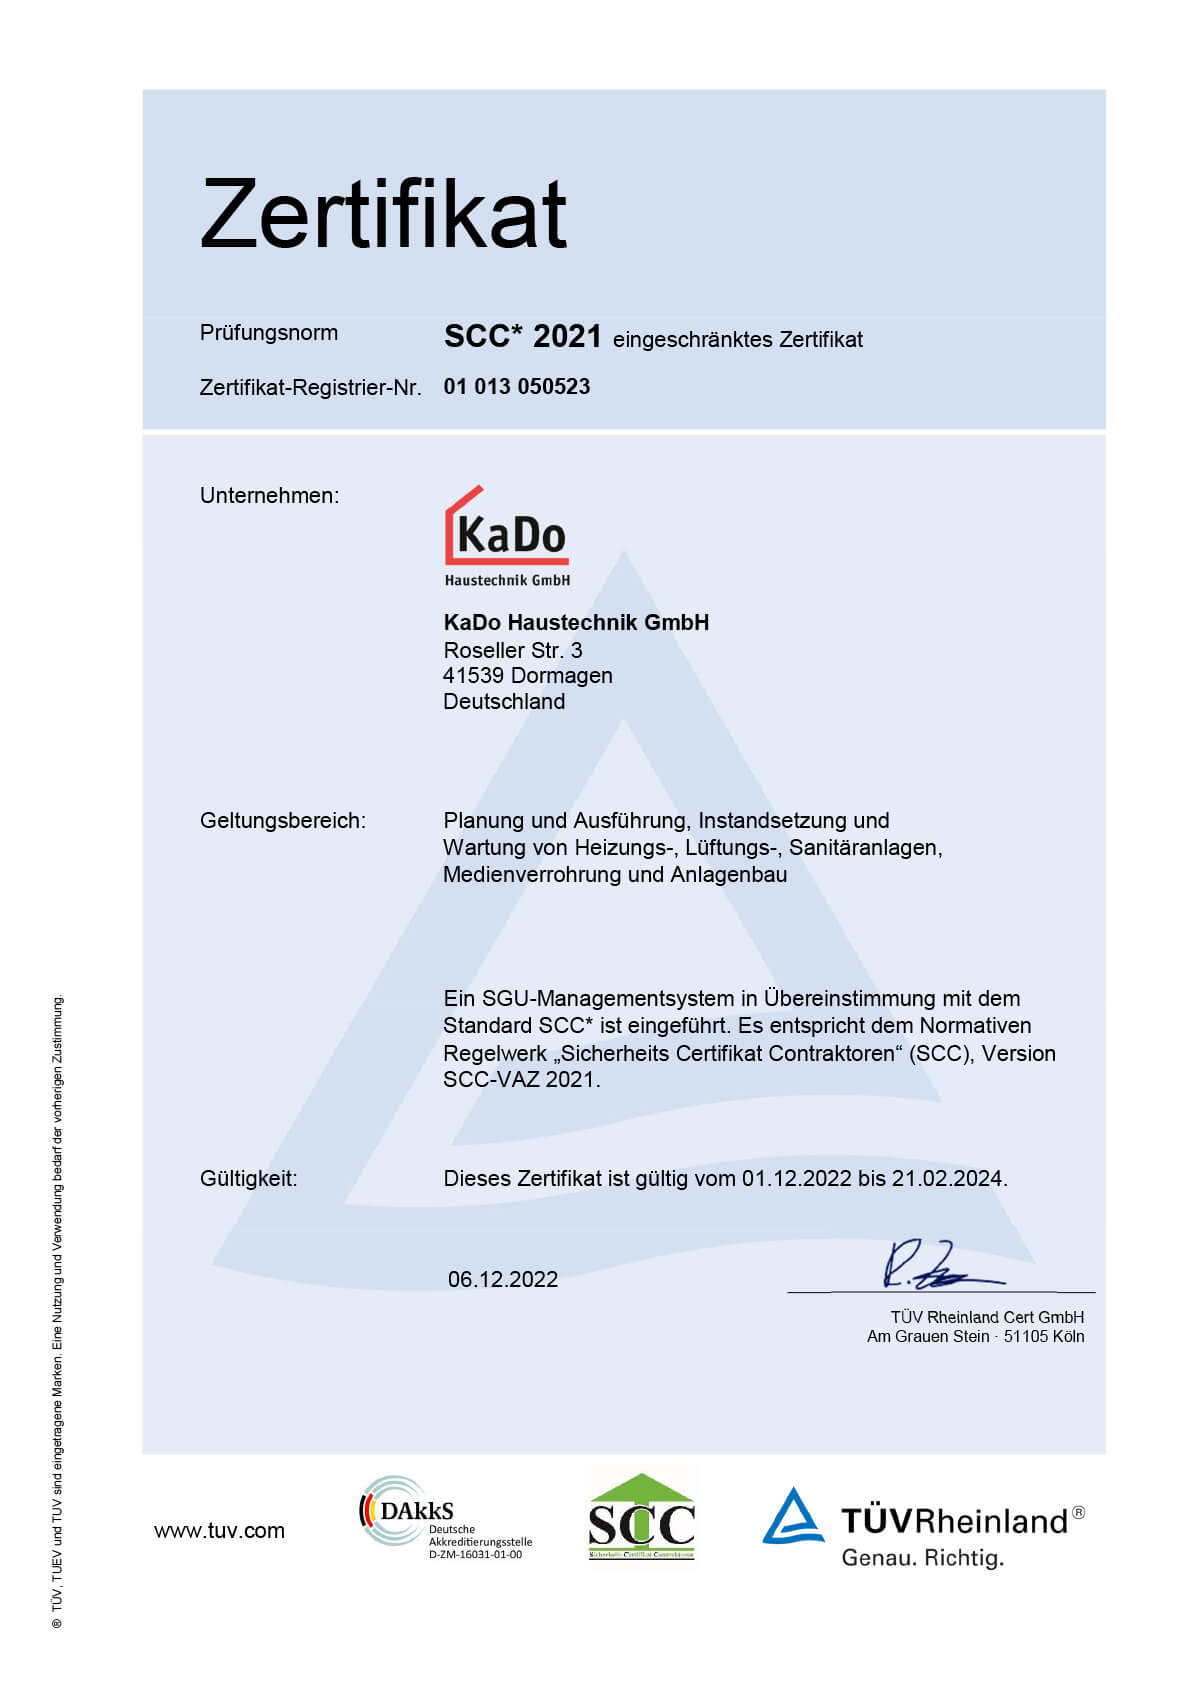 Sicherheits Certifikat Contraktoren (SCC), Version 2011